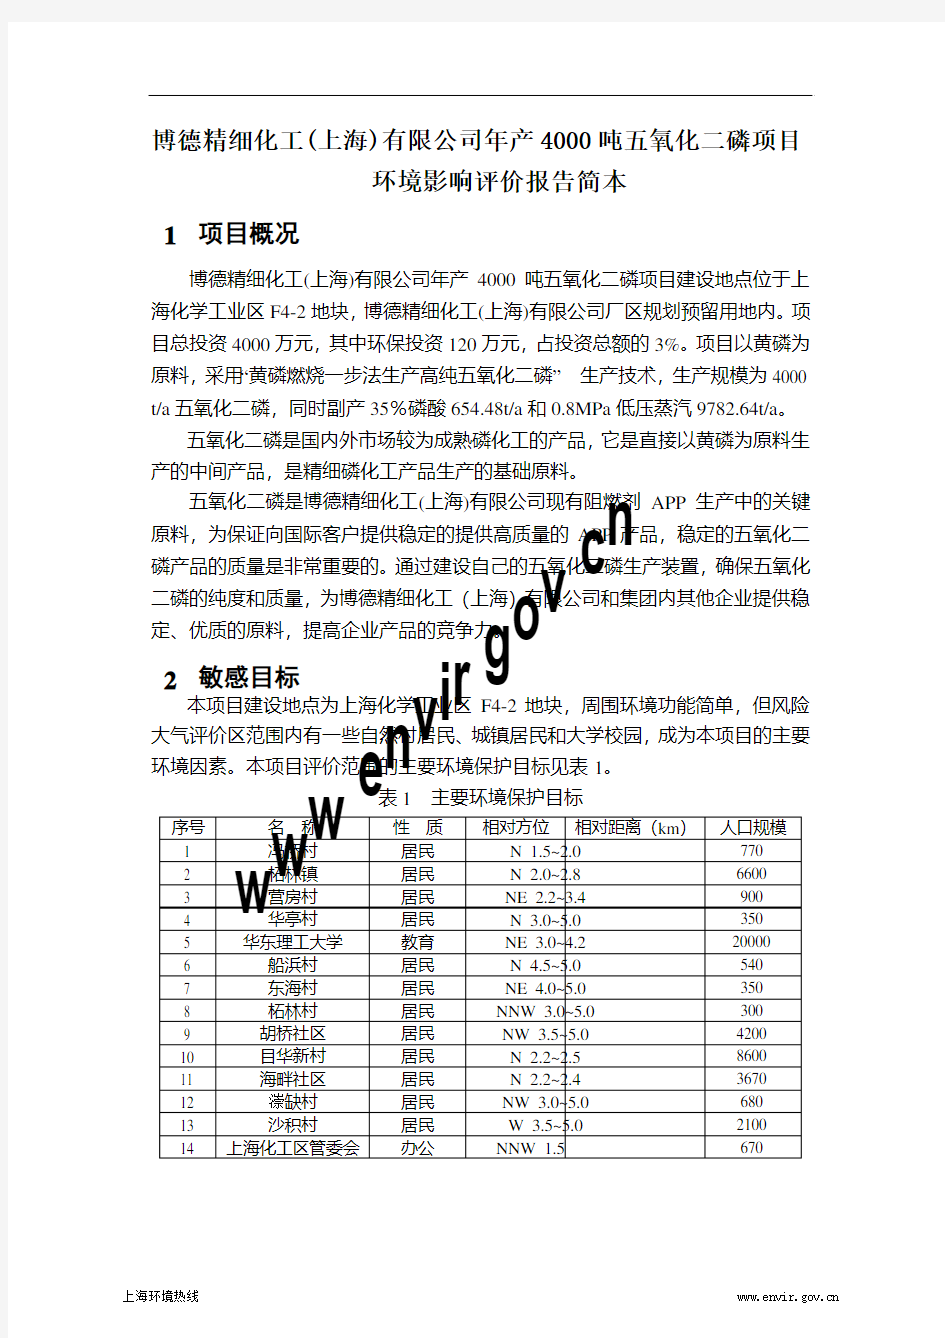 博德精细化工(上海)有限公司 年产 4000 吨五氧化二磷项目 环境